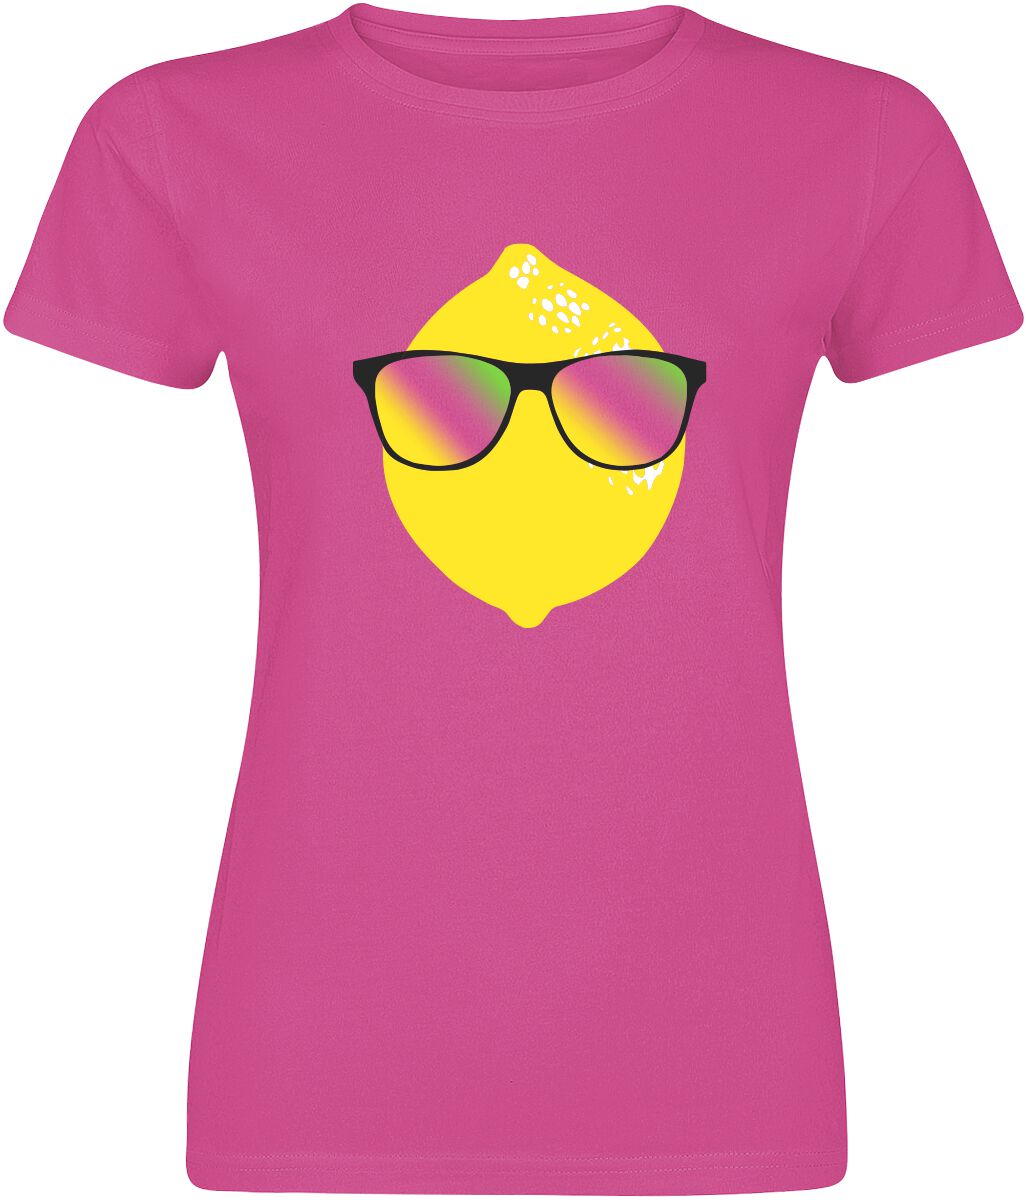 T-Shirt Manches courtes Fun de Food - Happy Lemon - S à XXL - pour Femme - fuchsia